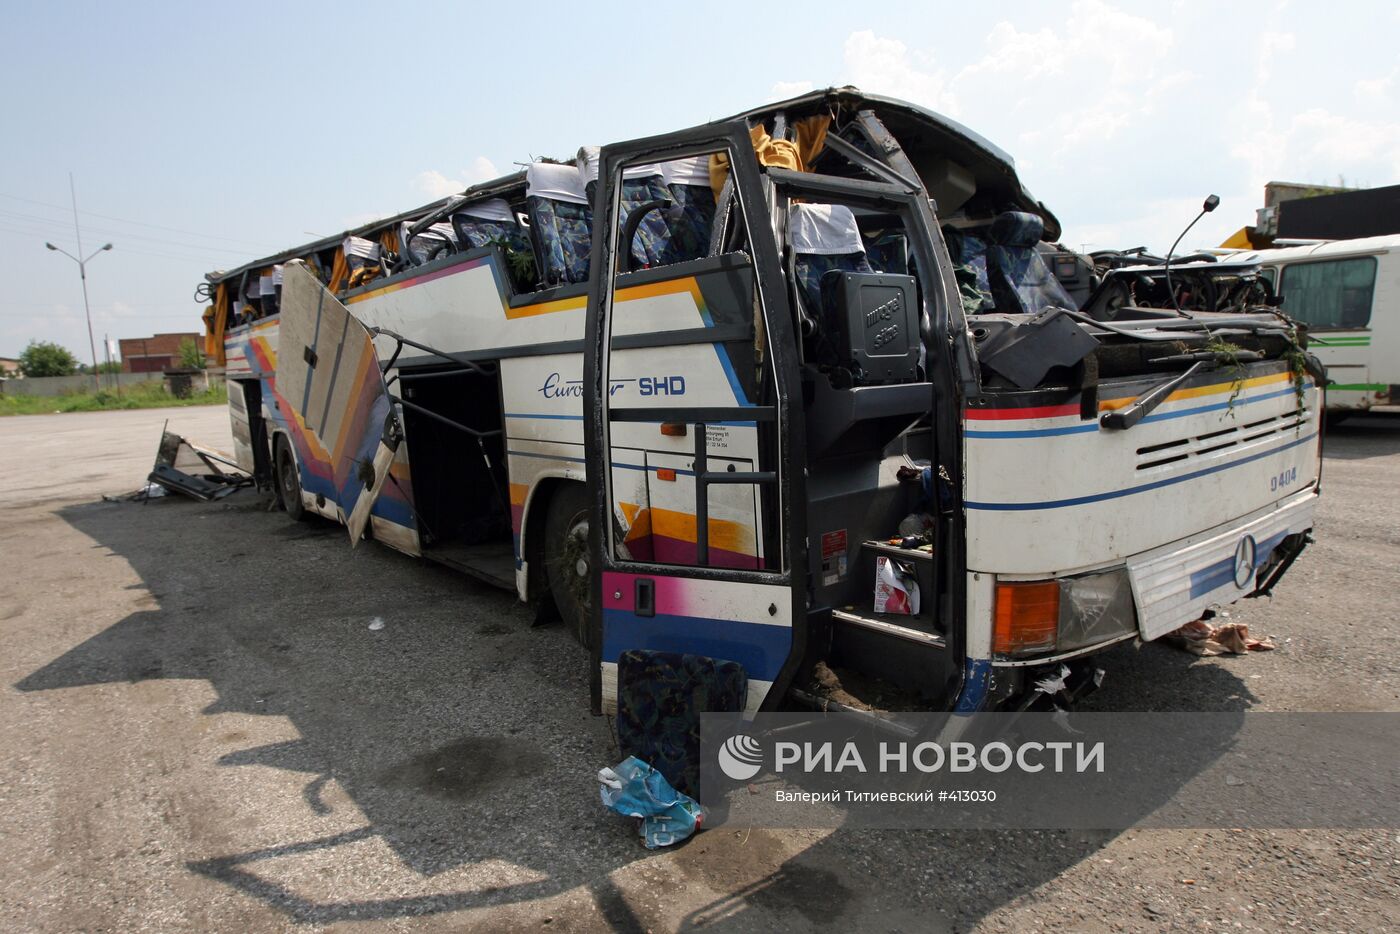 Авария с пассажирским автобусом в Новосибирской области